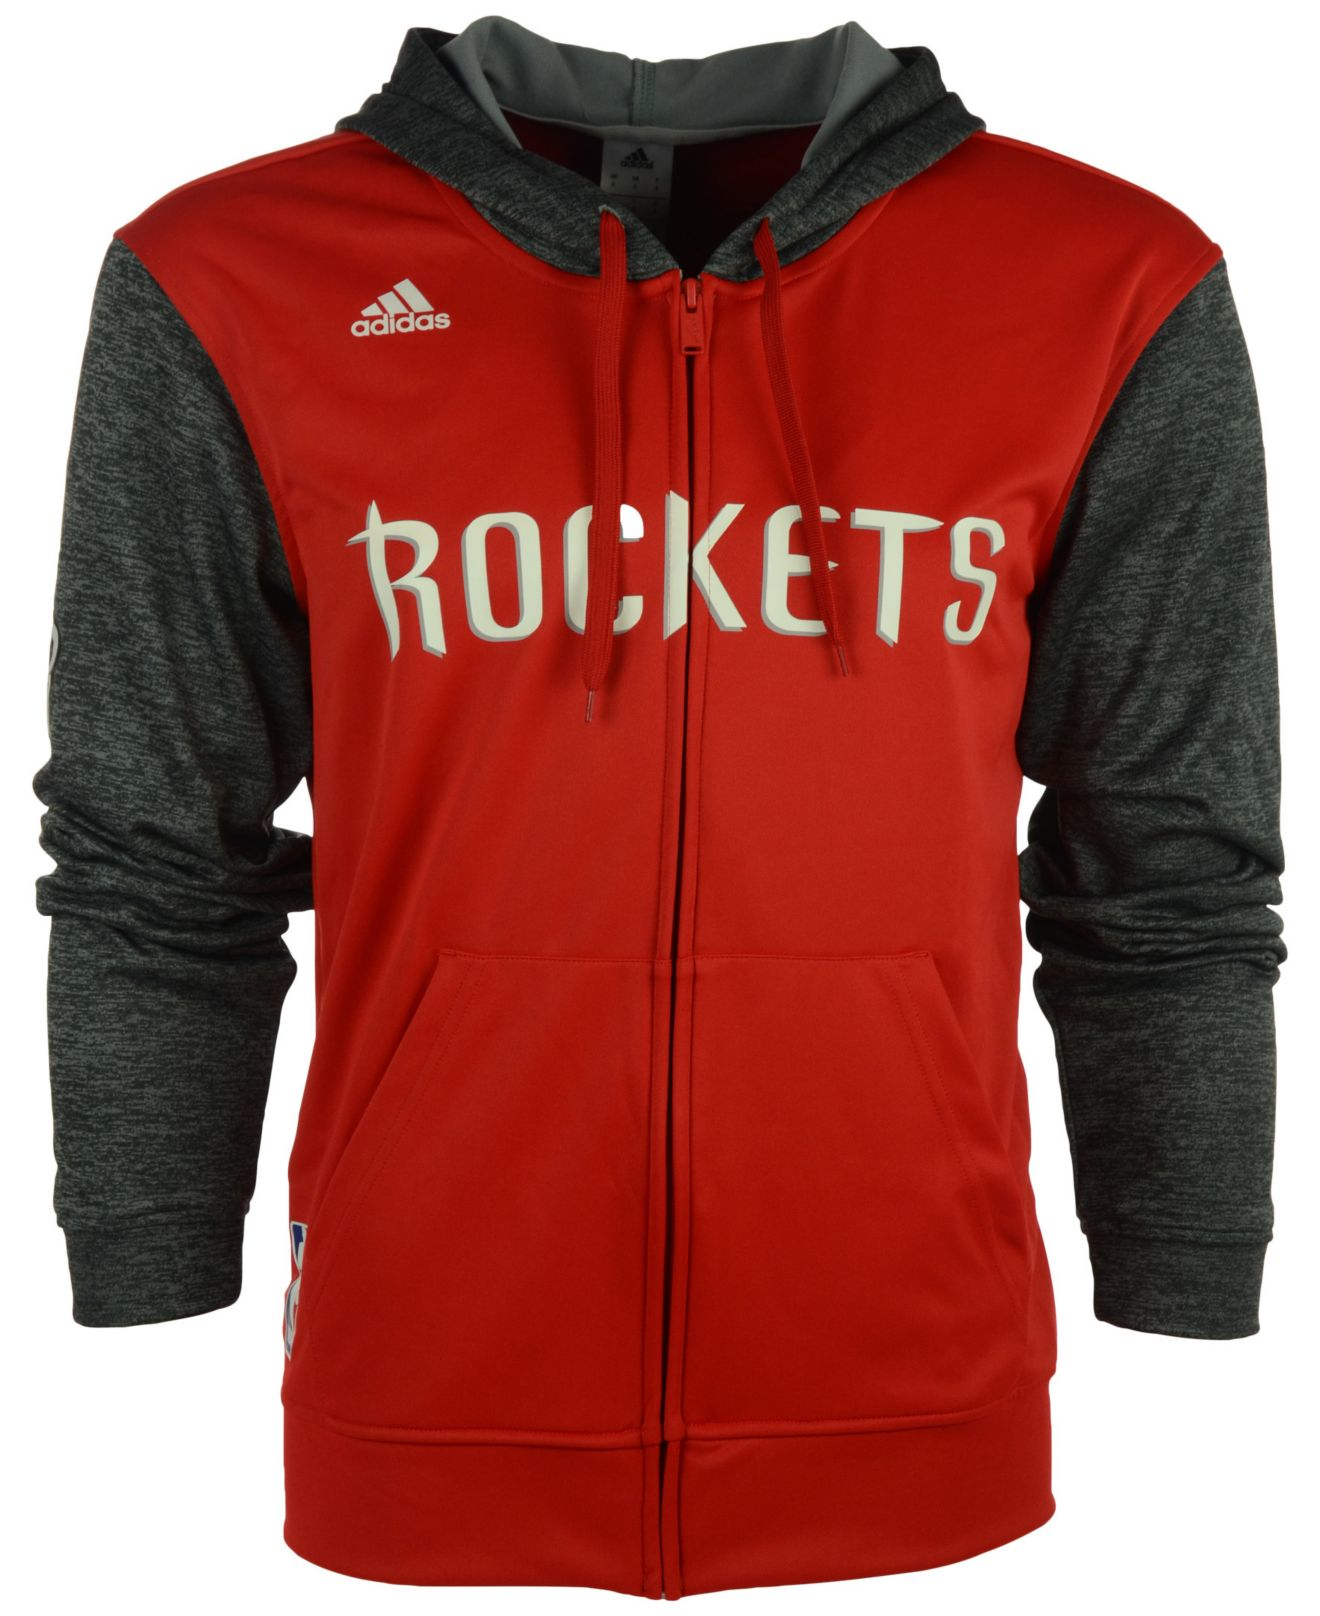 adidas rockets jacket